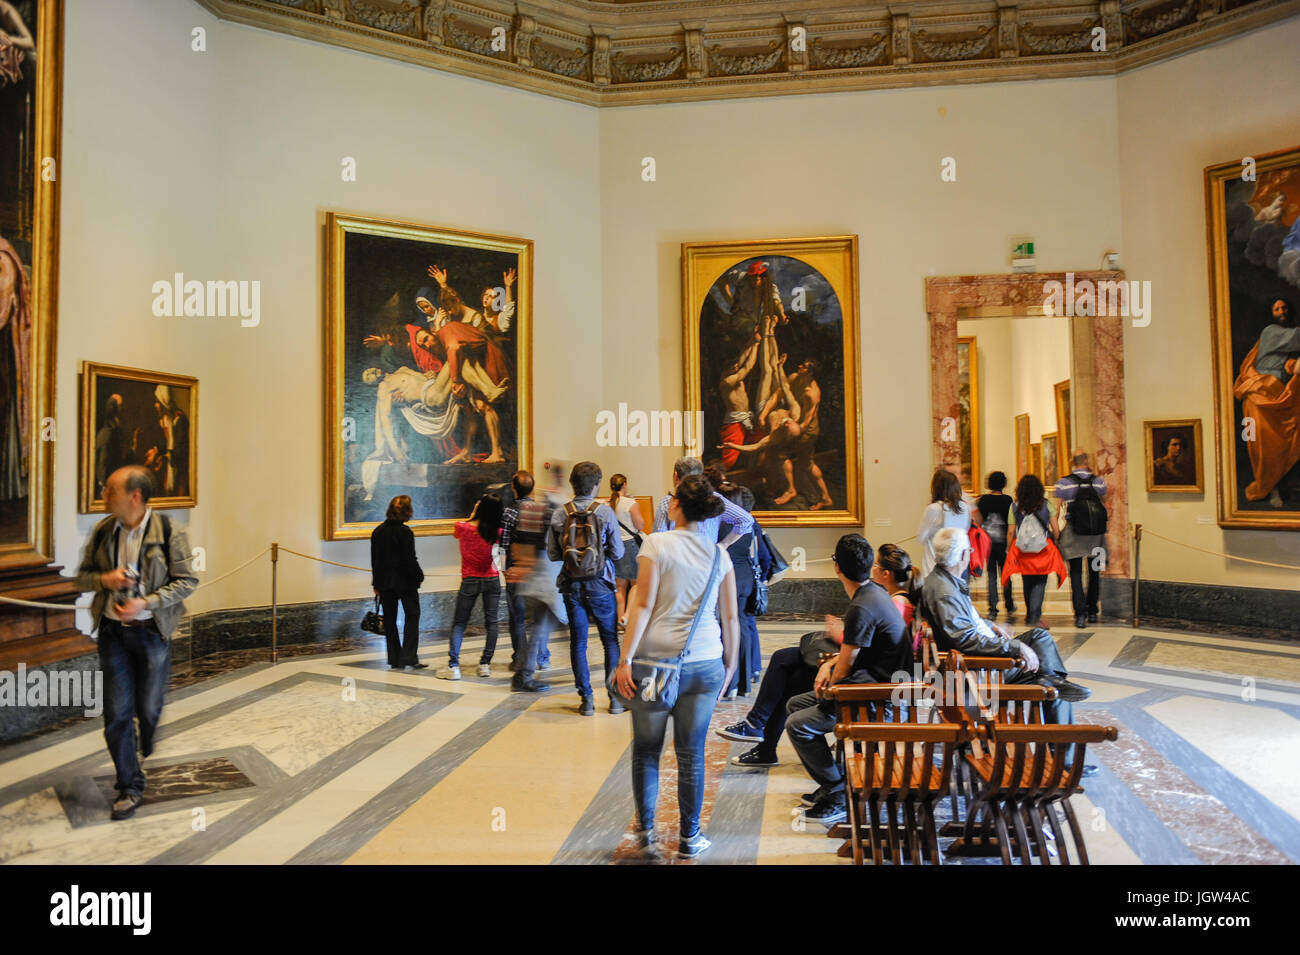 Les touristes d'admirer la mise au tombeau du Christ (Caravaggio) dans la Pinacothèque des Musées du Vatican. Musées du Vatican, Rome, Italie Banque D'Images